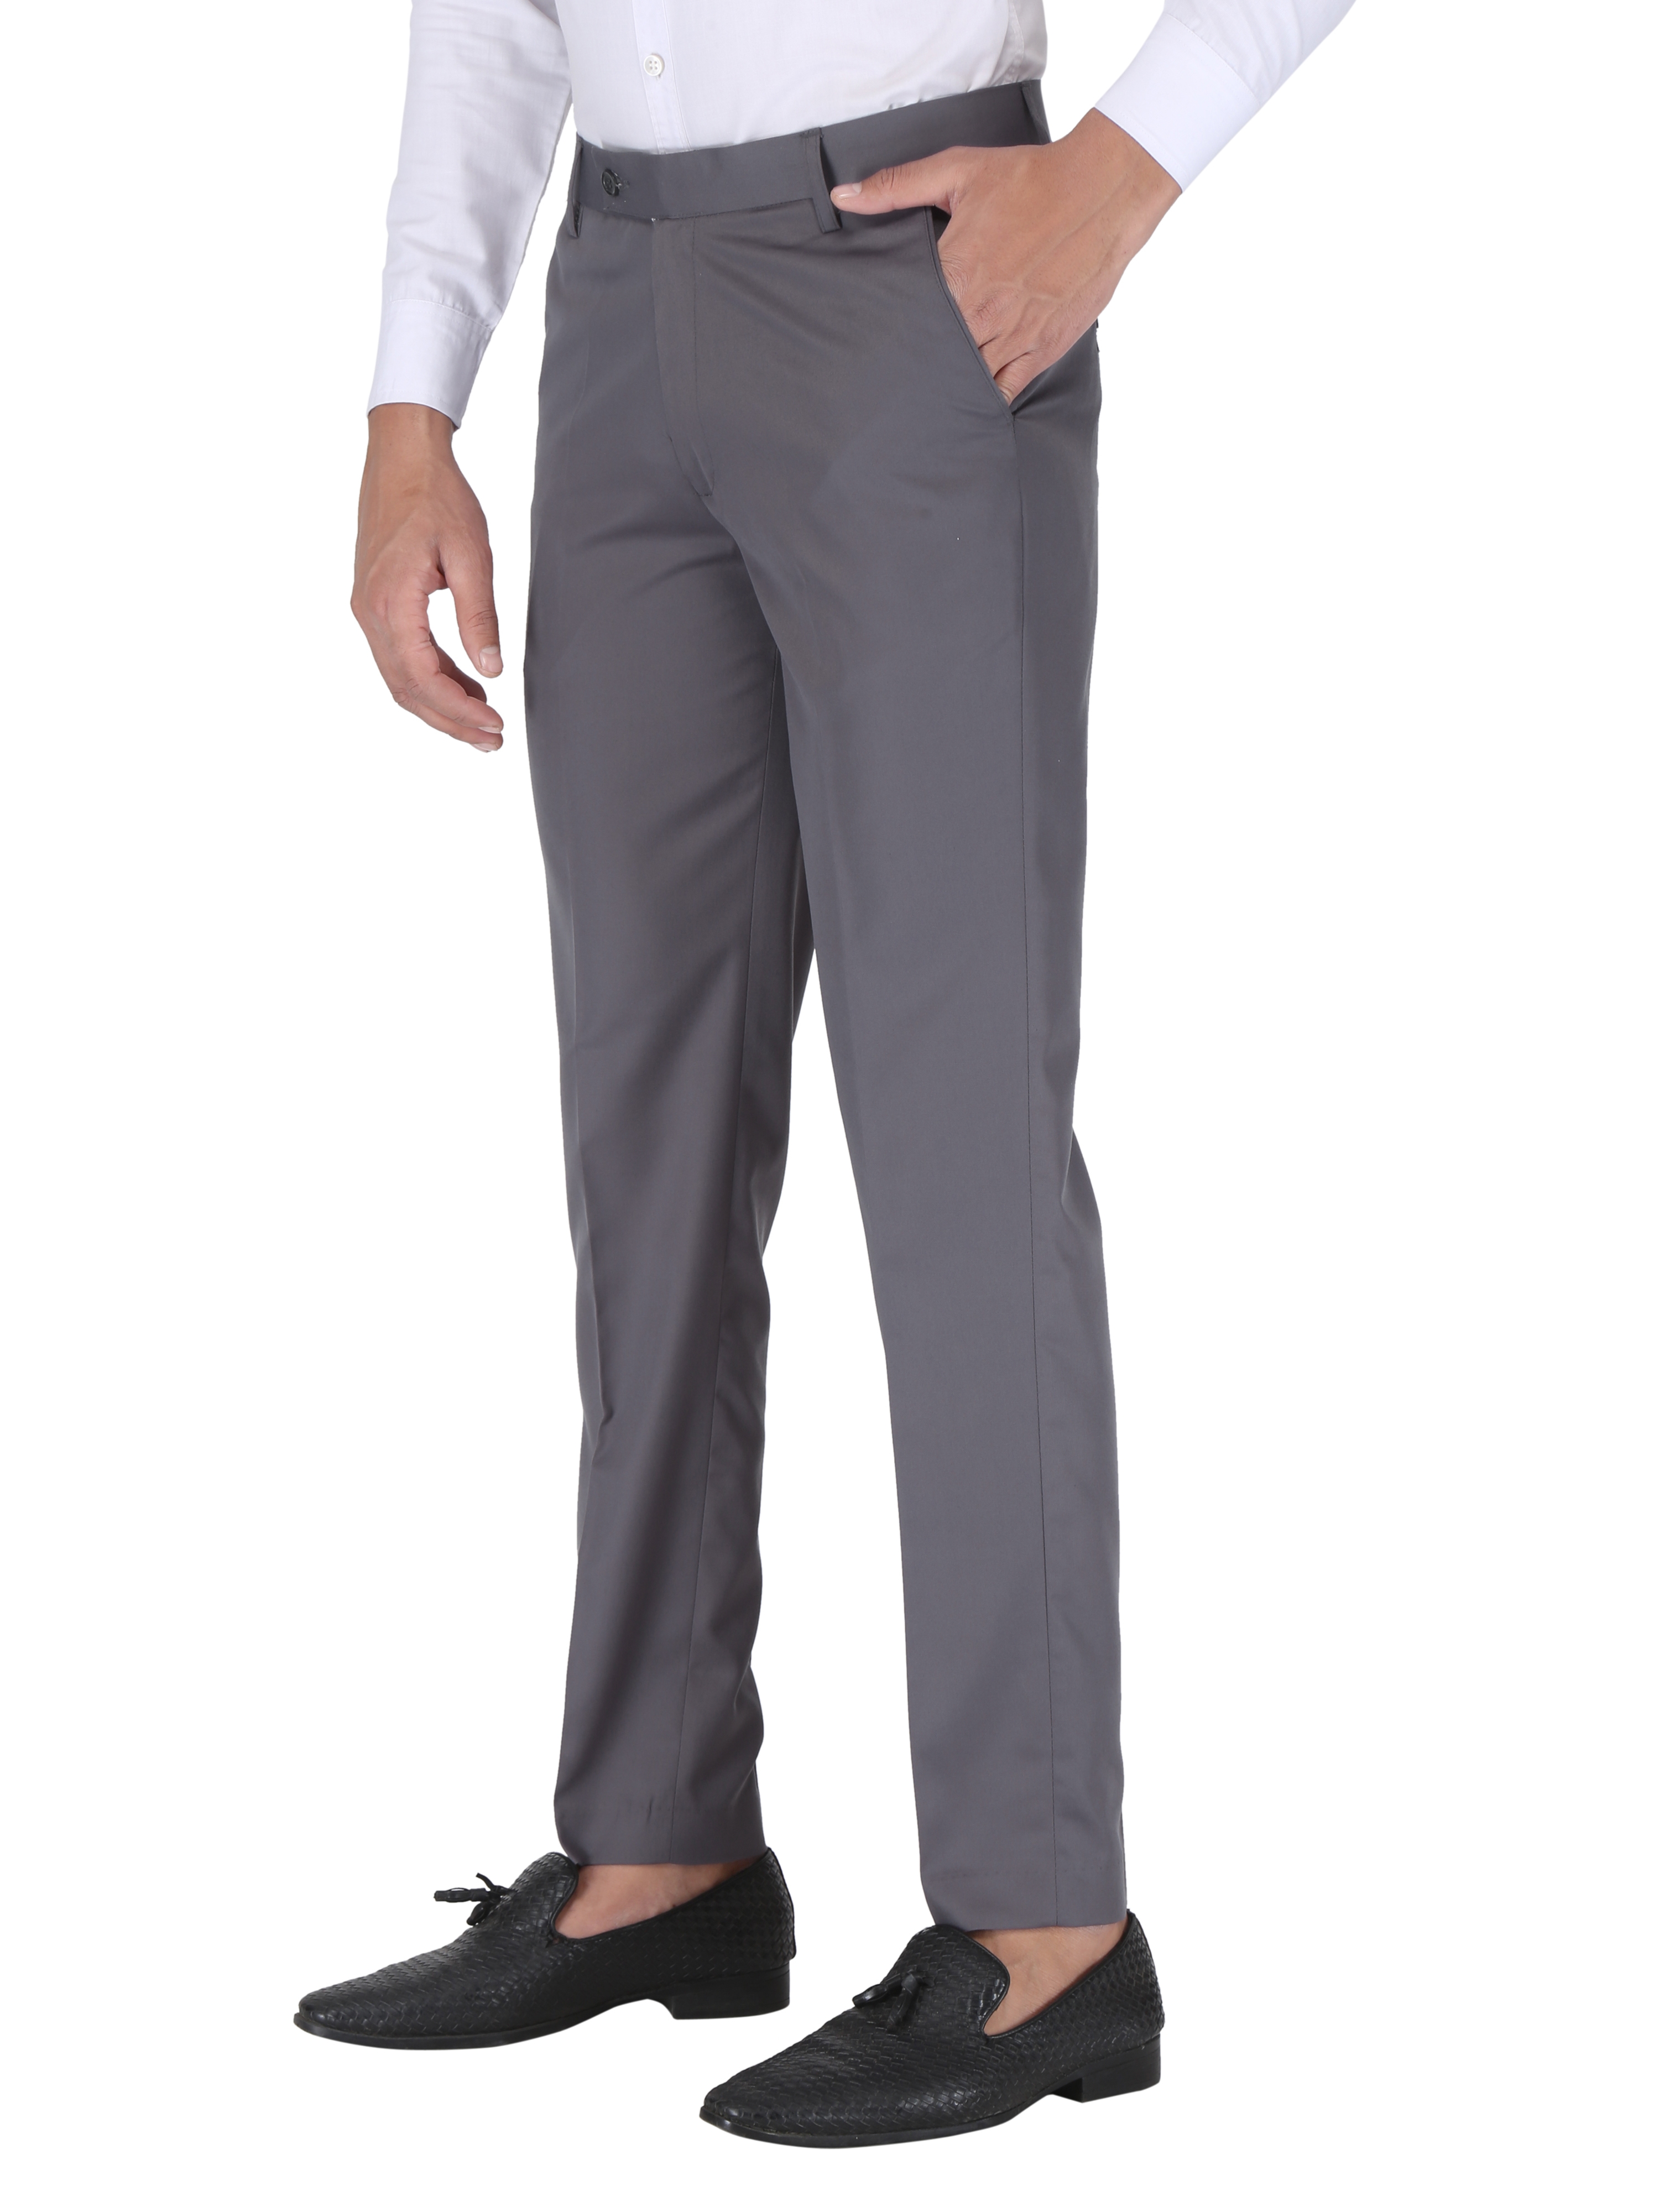 CHARLIE CARLOS | Dark Grey Men's Contemporary Reguler Leg Business Pants in Virgin PolyViscose Regular Fit Formal Trousers/Pants